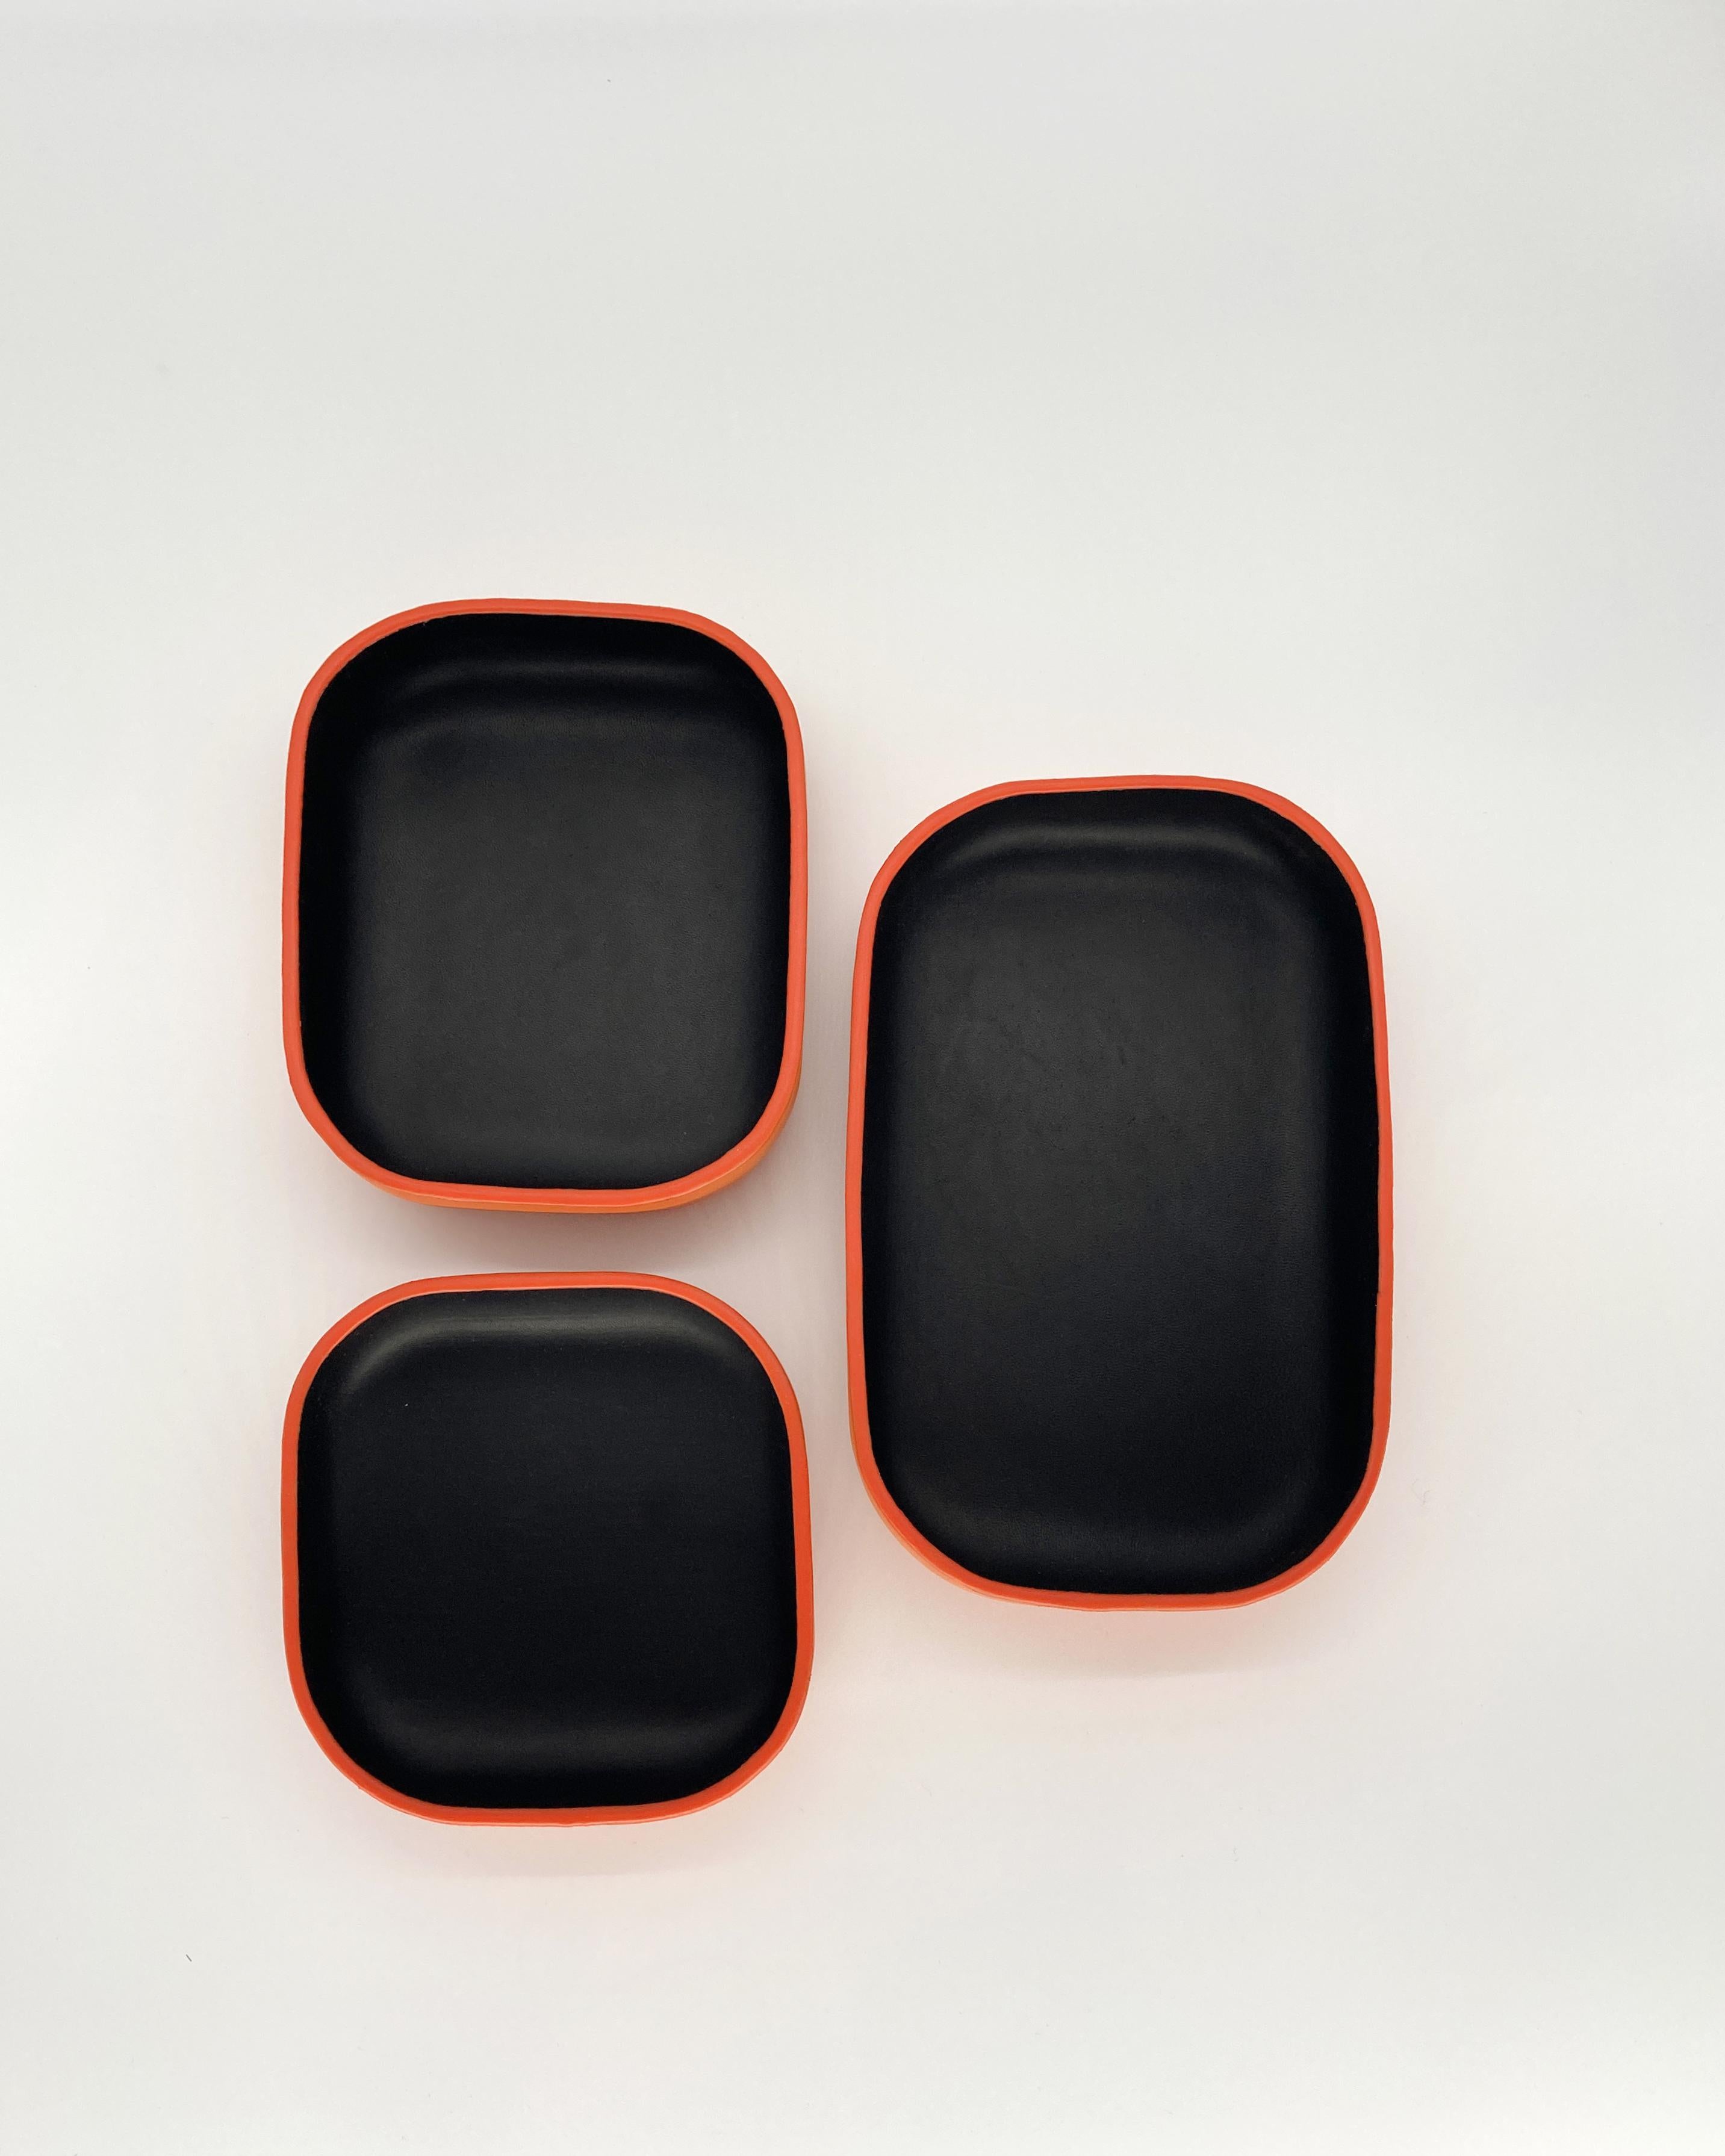 Cet ensemble de plateaux en cuir faits main, de couleur noire et orange, est parfait pour compléter la table de votre salle à manger ou comme pièce maîtresse dans votre salon. Le charme rustique rencontre la sensibilité du design artisanal